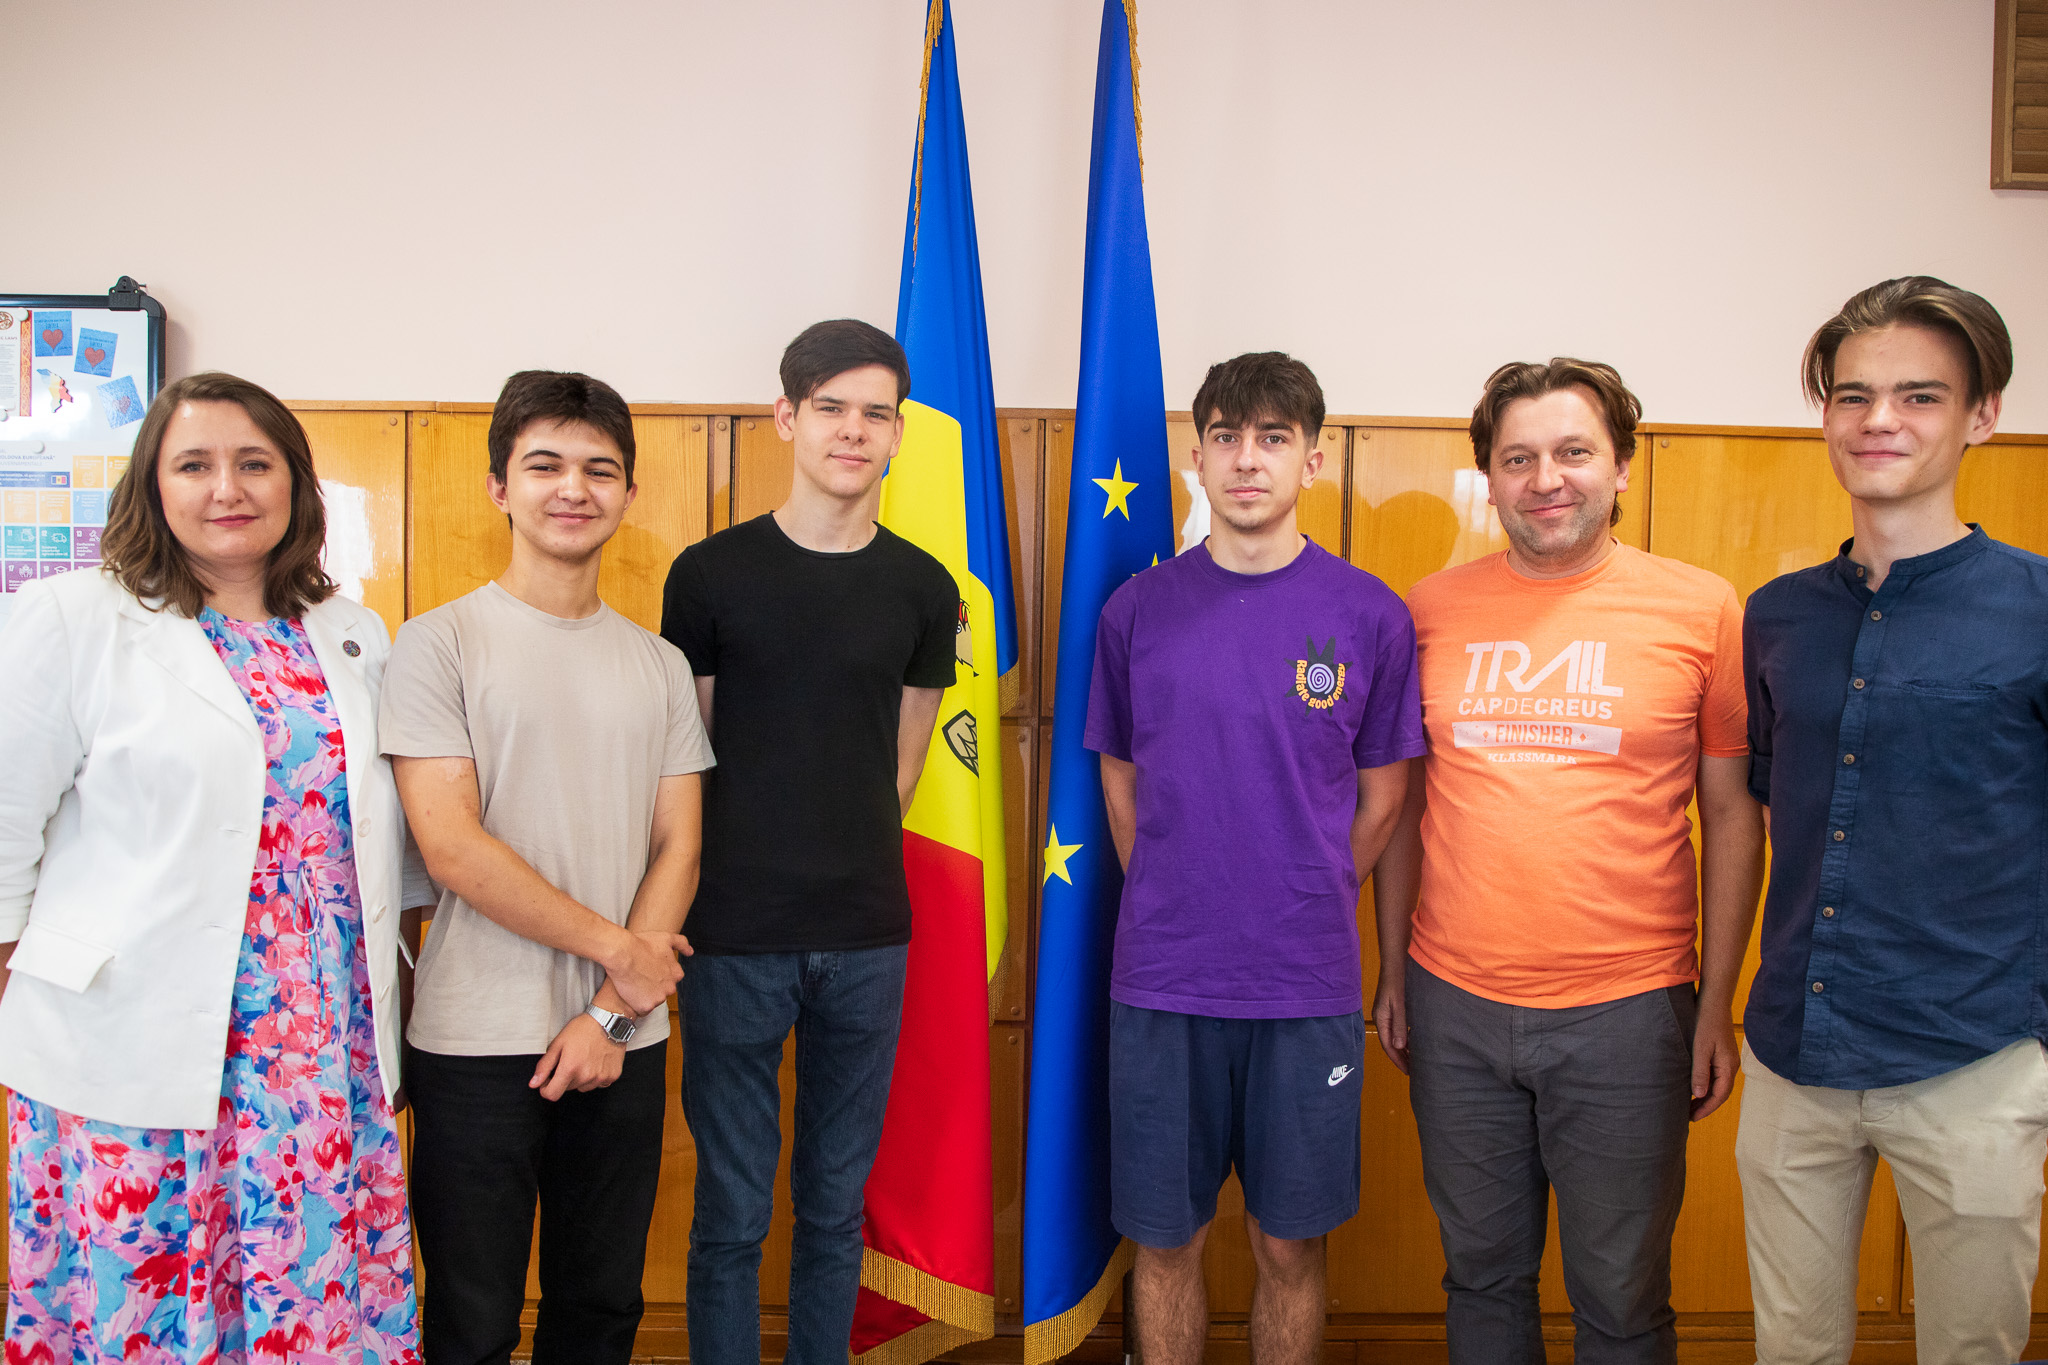 O echipă din Moldova pleacă la un concurs de robotică din Singapore. Alaiba a decis să le ureze succes personal